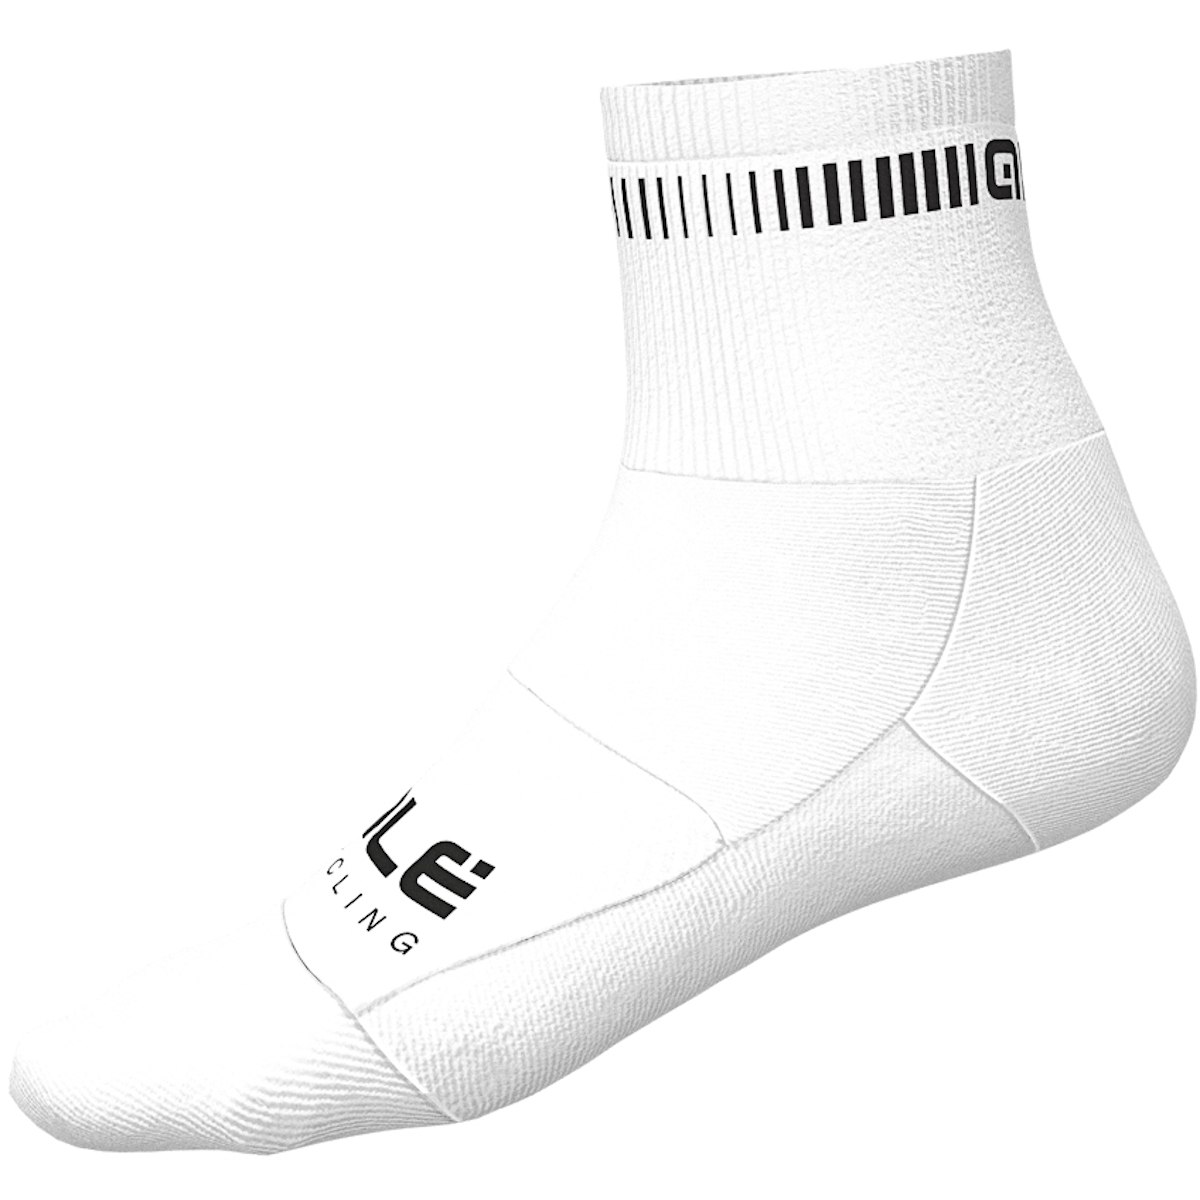 Produktbild von Alé Logo Socken - weiß/schwarz